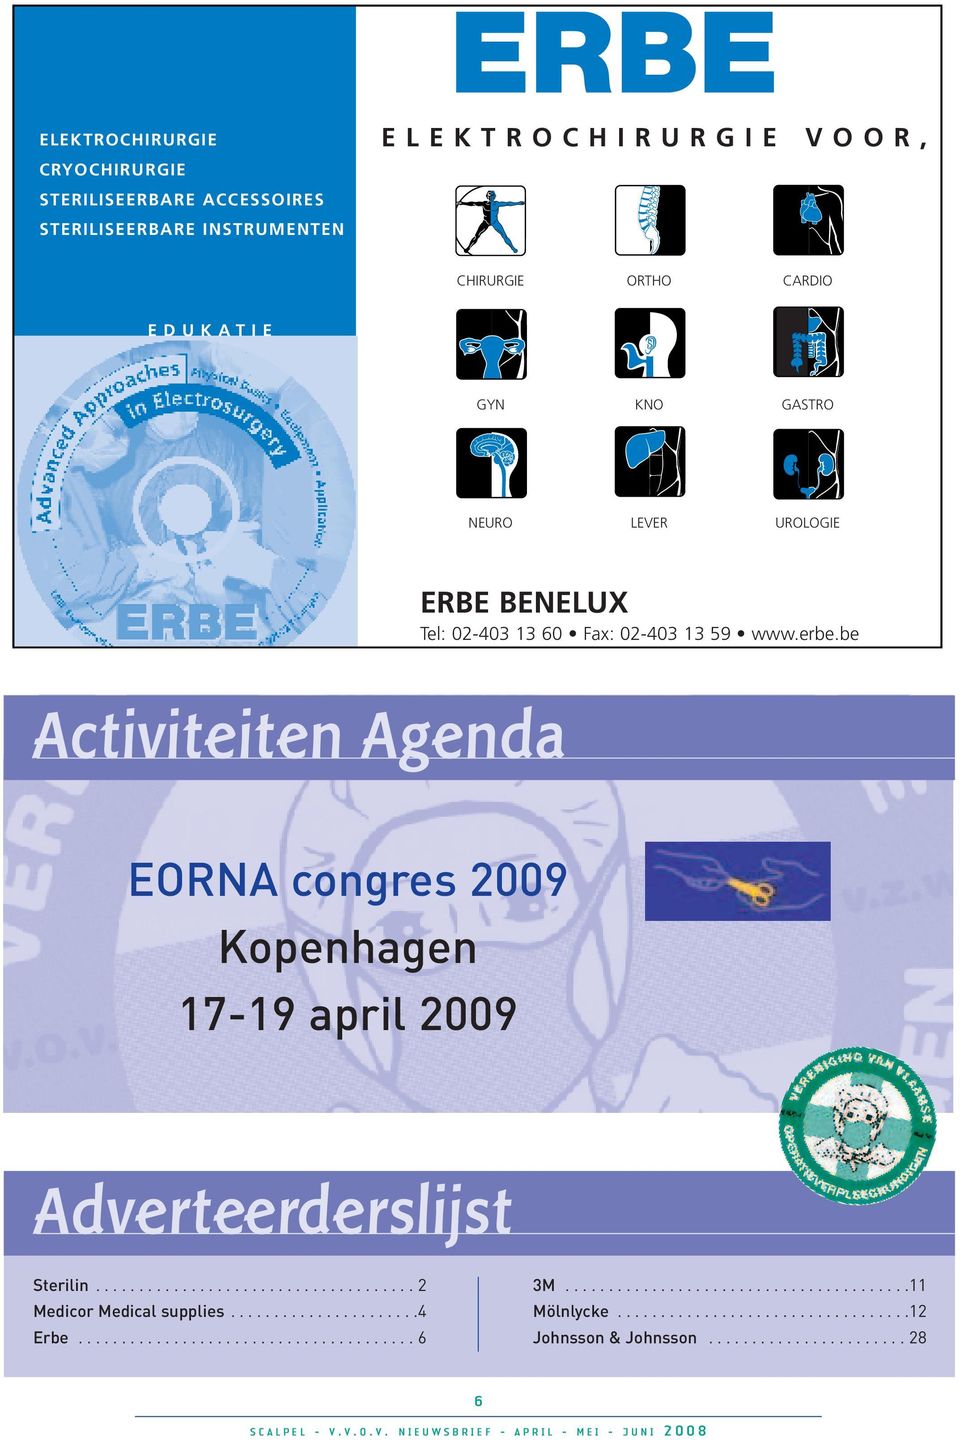 be Activiteiten Agenda EORNA congres 2009 Kopenhagen 17-19 april 2009 Adverteerderslijst Sterilin..................................... 2 Medicor Medical supplies.